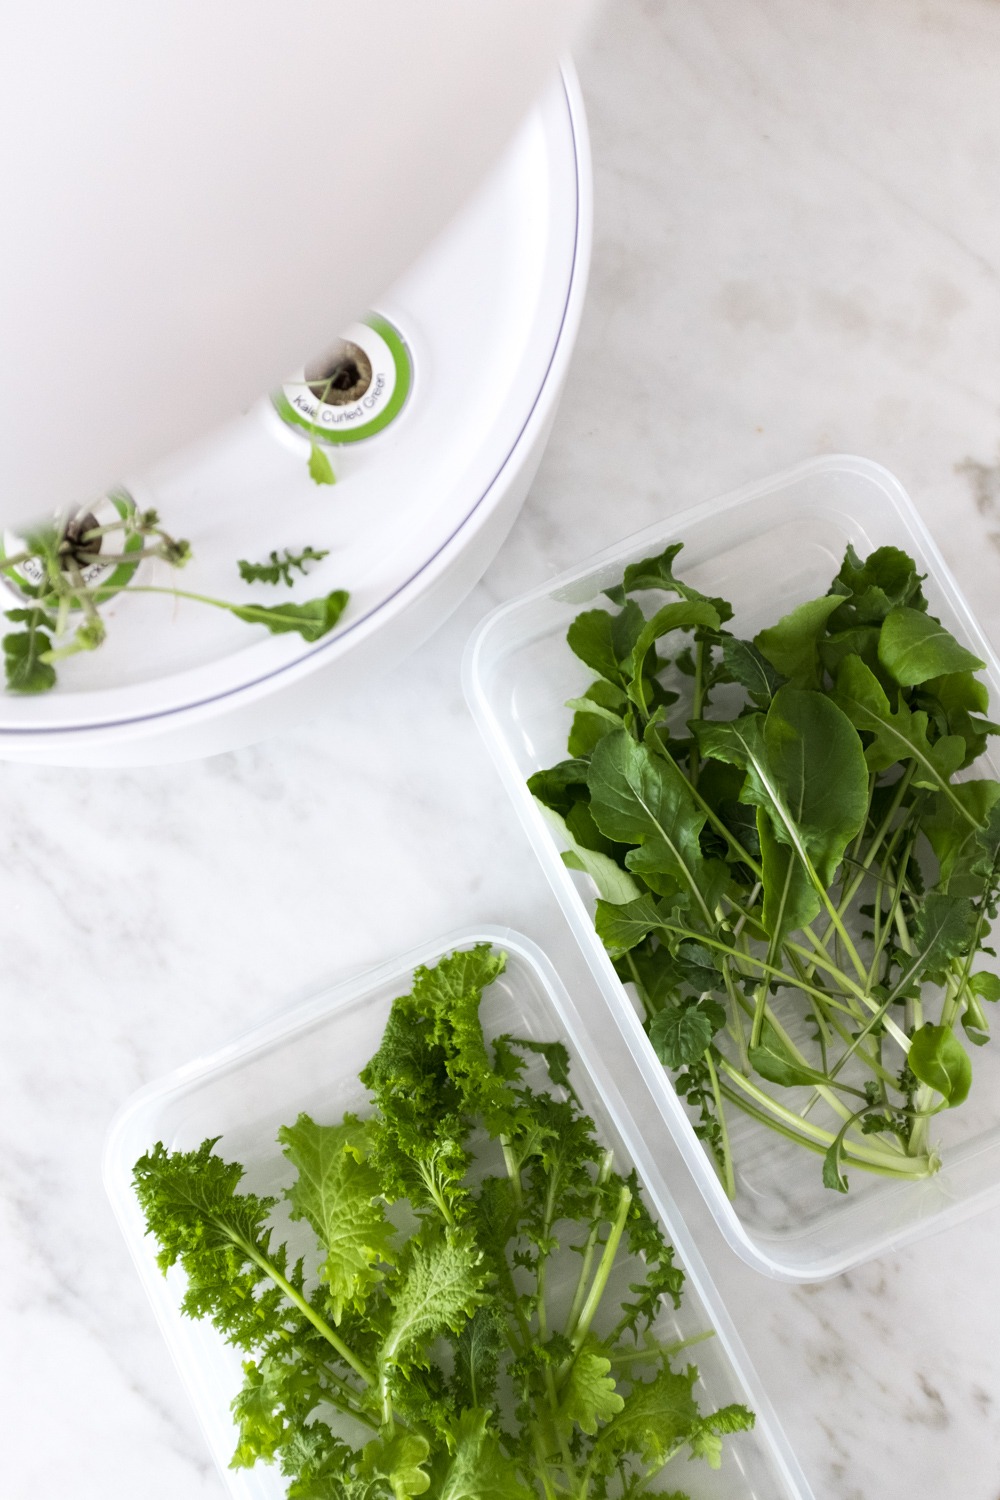 Bei der Ernte vom SmartGrow: die frisch geernteten Kräuter und Salate kann man auch super für ein paar Tage im Kühlschrank aufbewahren. Ich verwende dafür luftdicht verschlossene Dosen und schon bleiben sie super knackig!